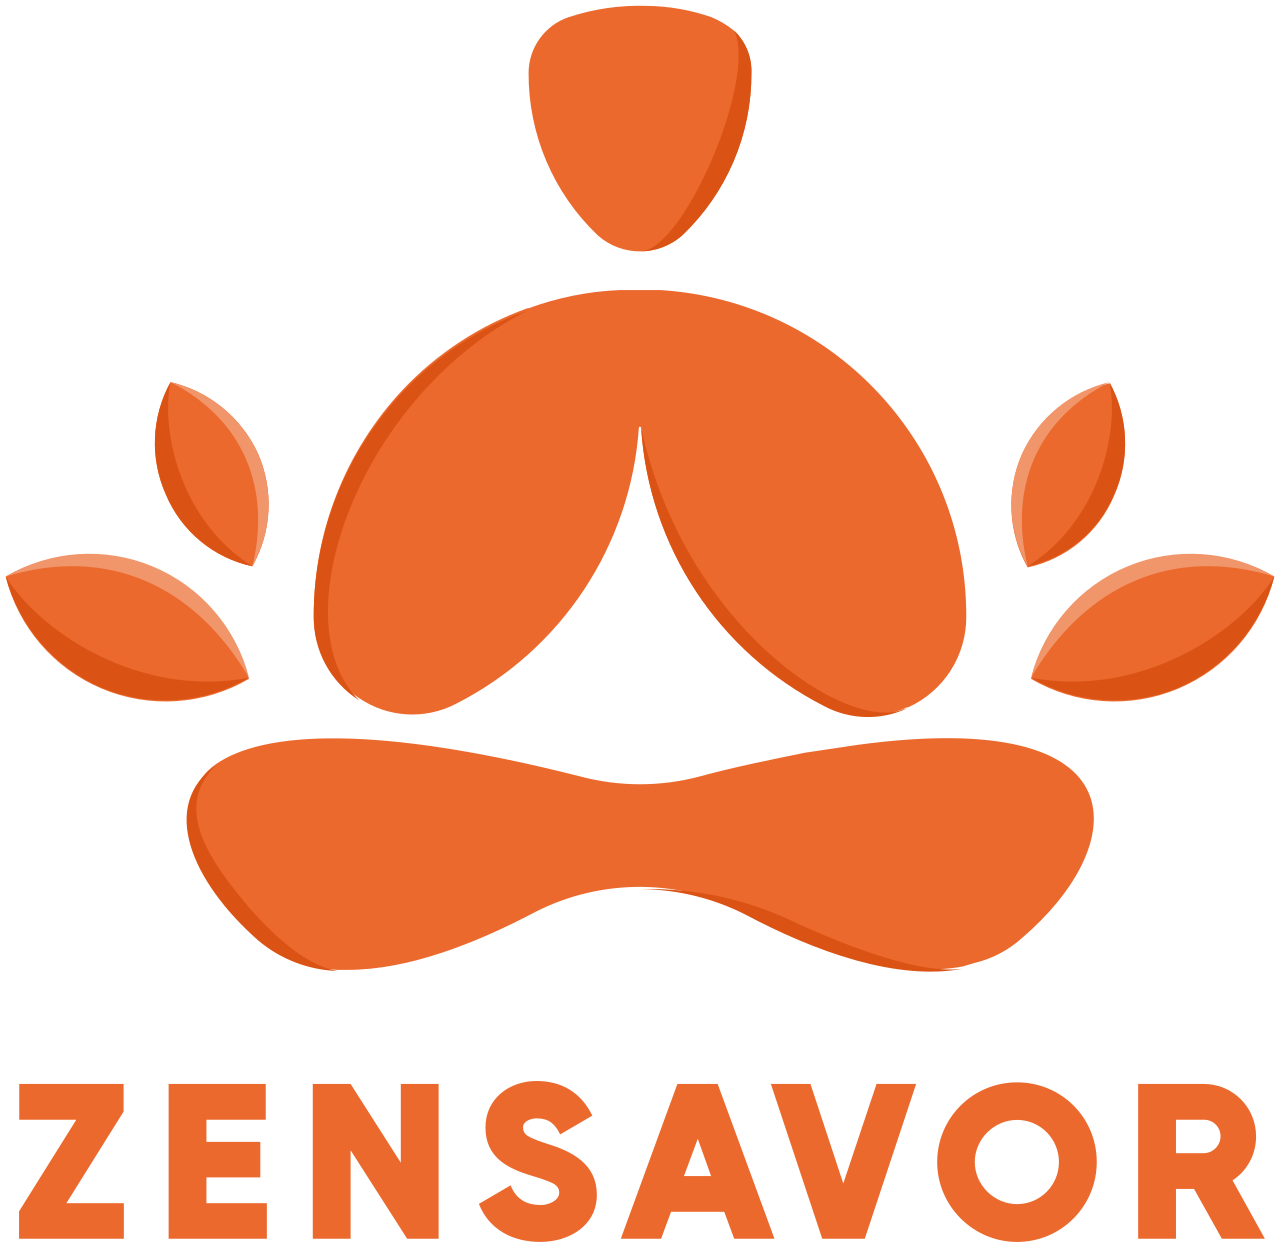 zensavor's logo